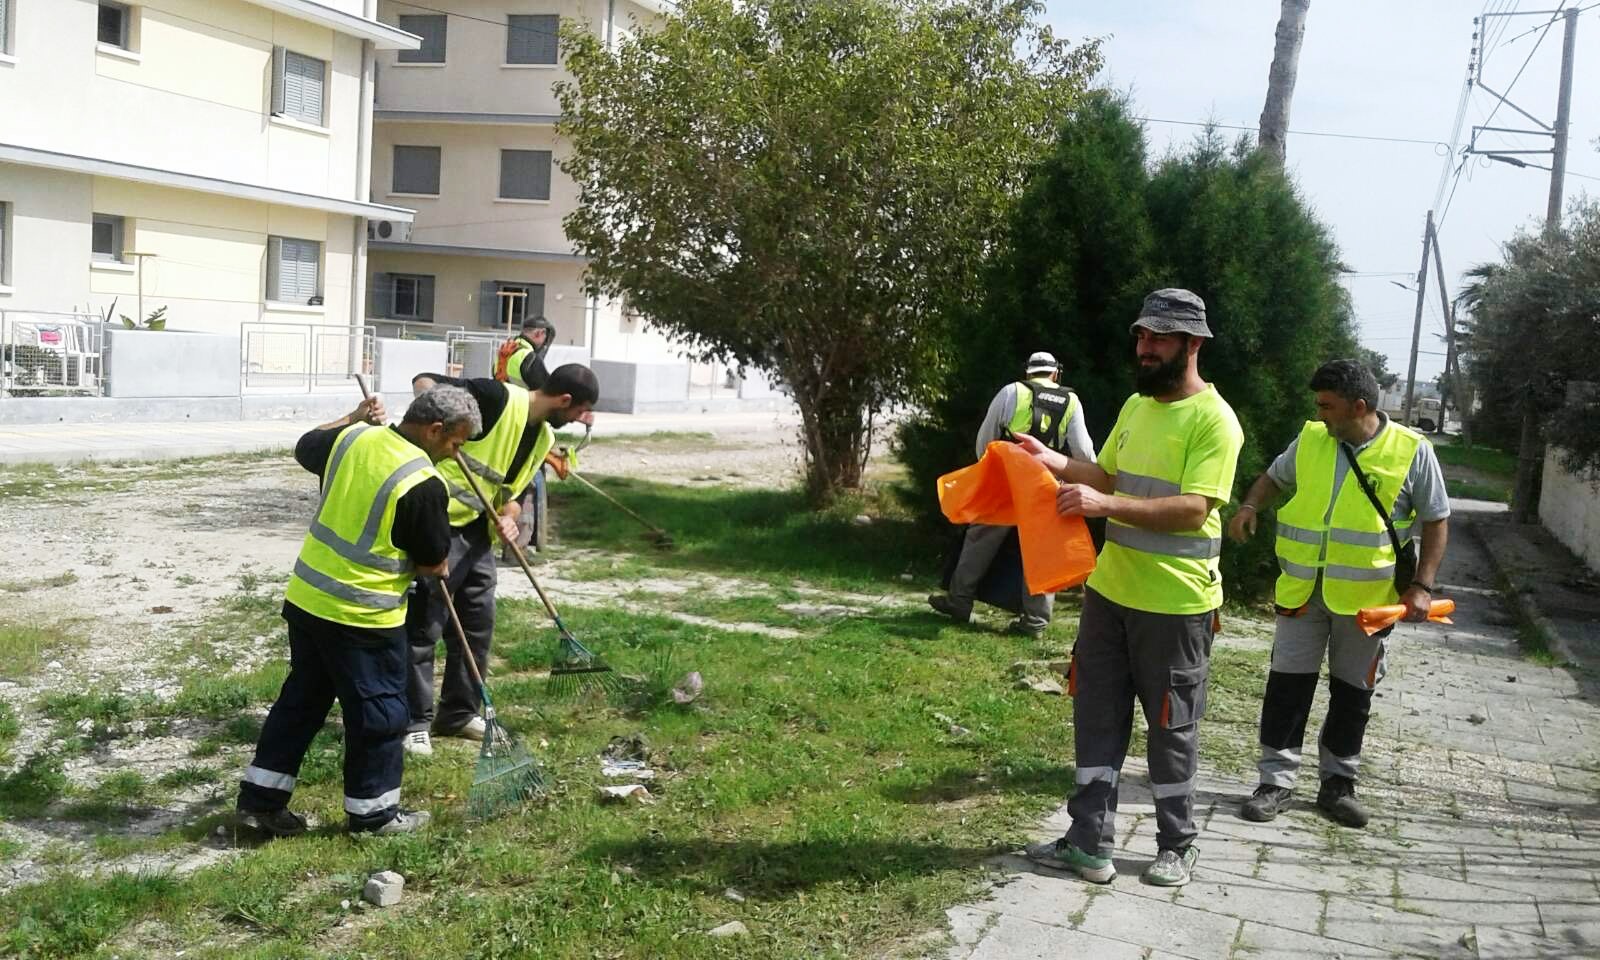 Συνεχίζονται οι εργασίες καθαρισμού από το Τμήμα Καθαριότητας του Δήμου Λάρνακας στους δρόμους της πόλης